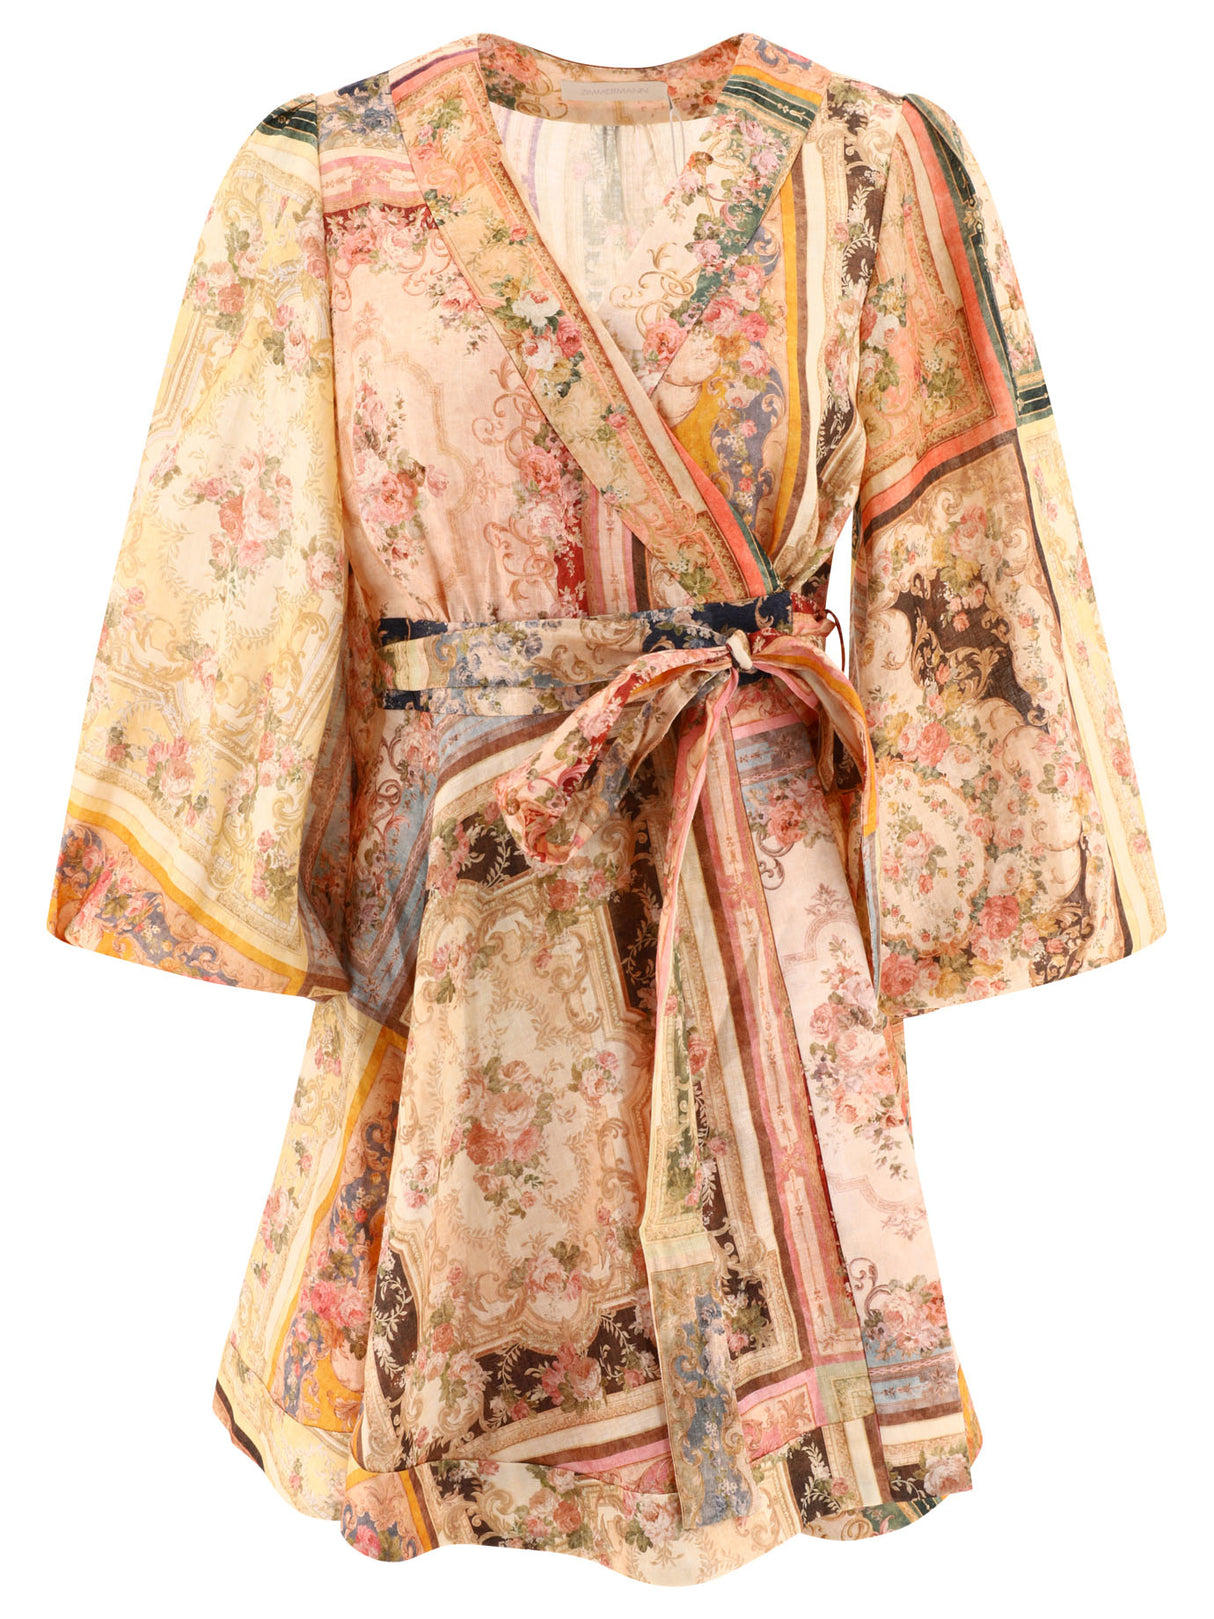 米色纱裙 搭配对比色边口袋和绑带腰带 -女士服装